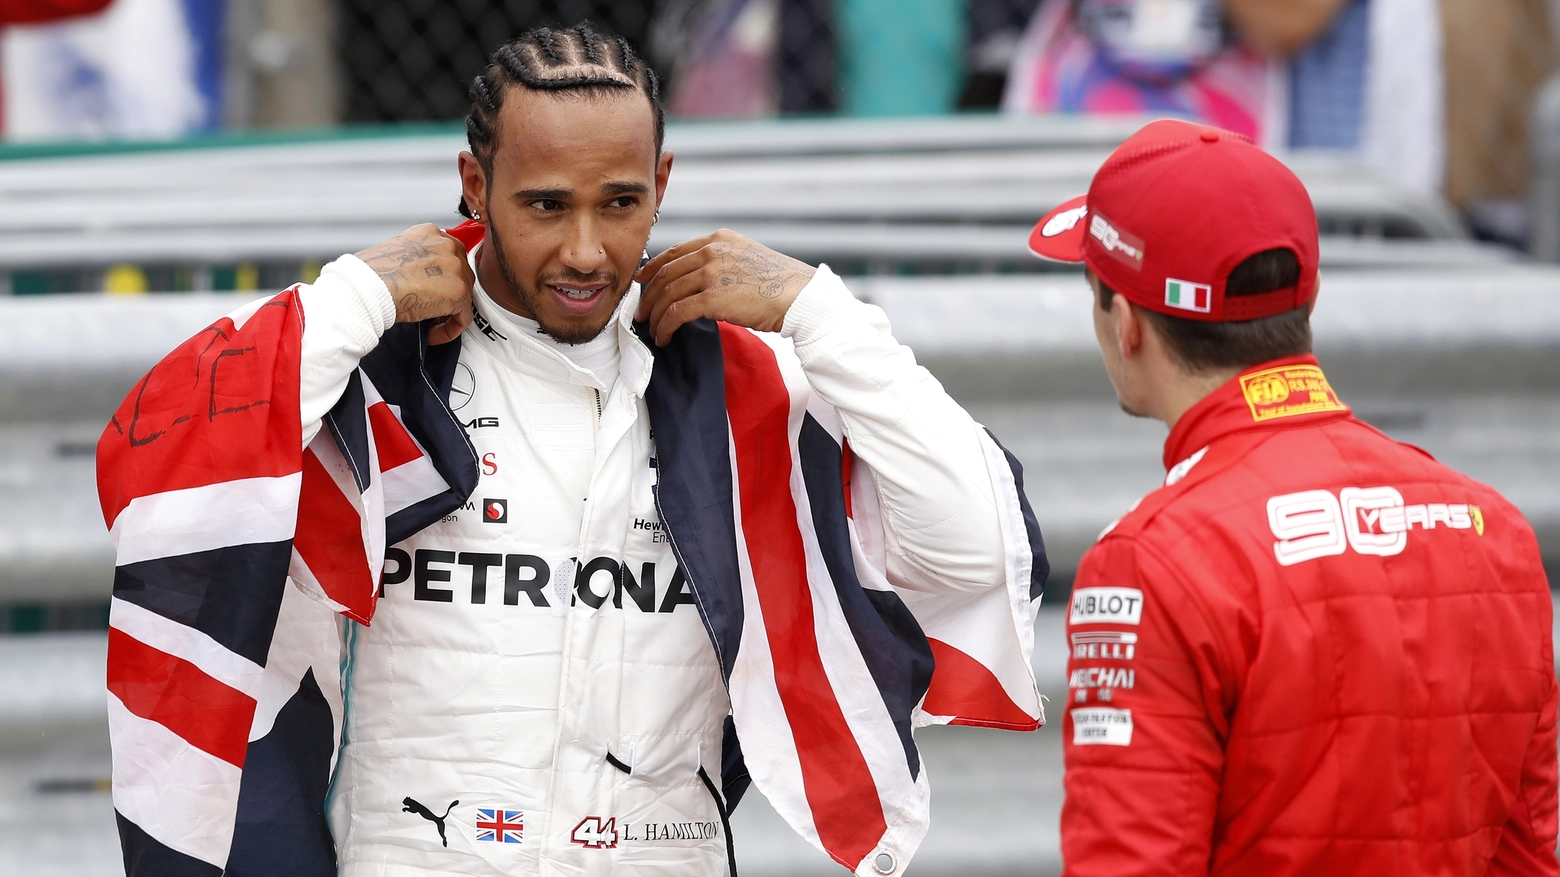 Hamilton in Ferrari per i bookie potrebbe riaprire le speranze di titolo